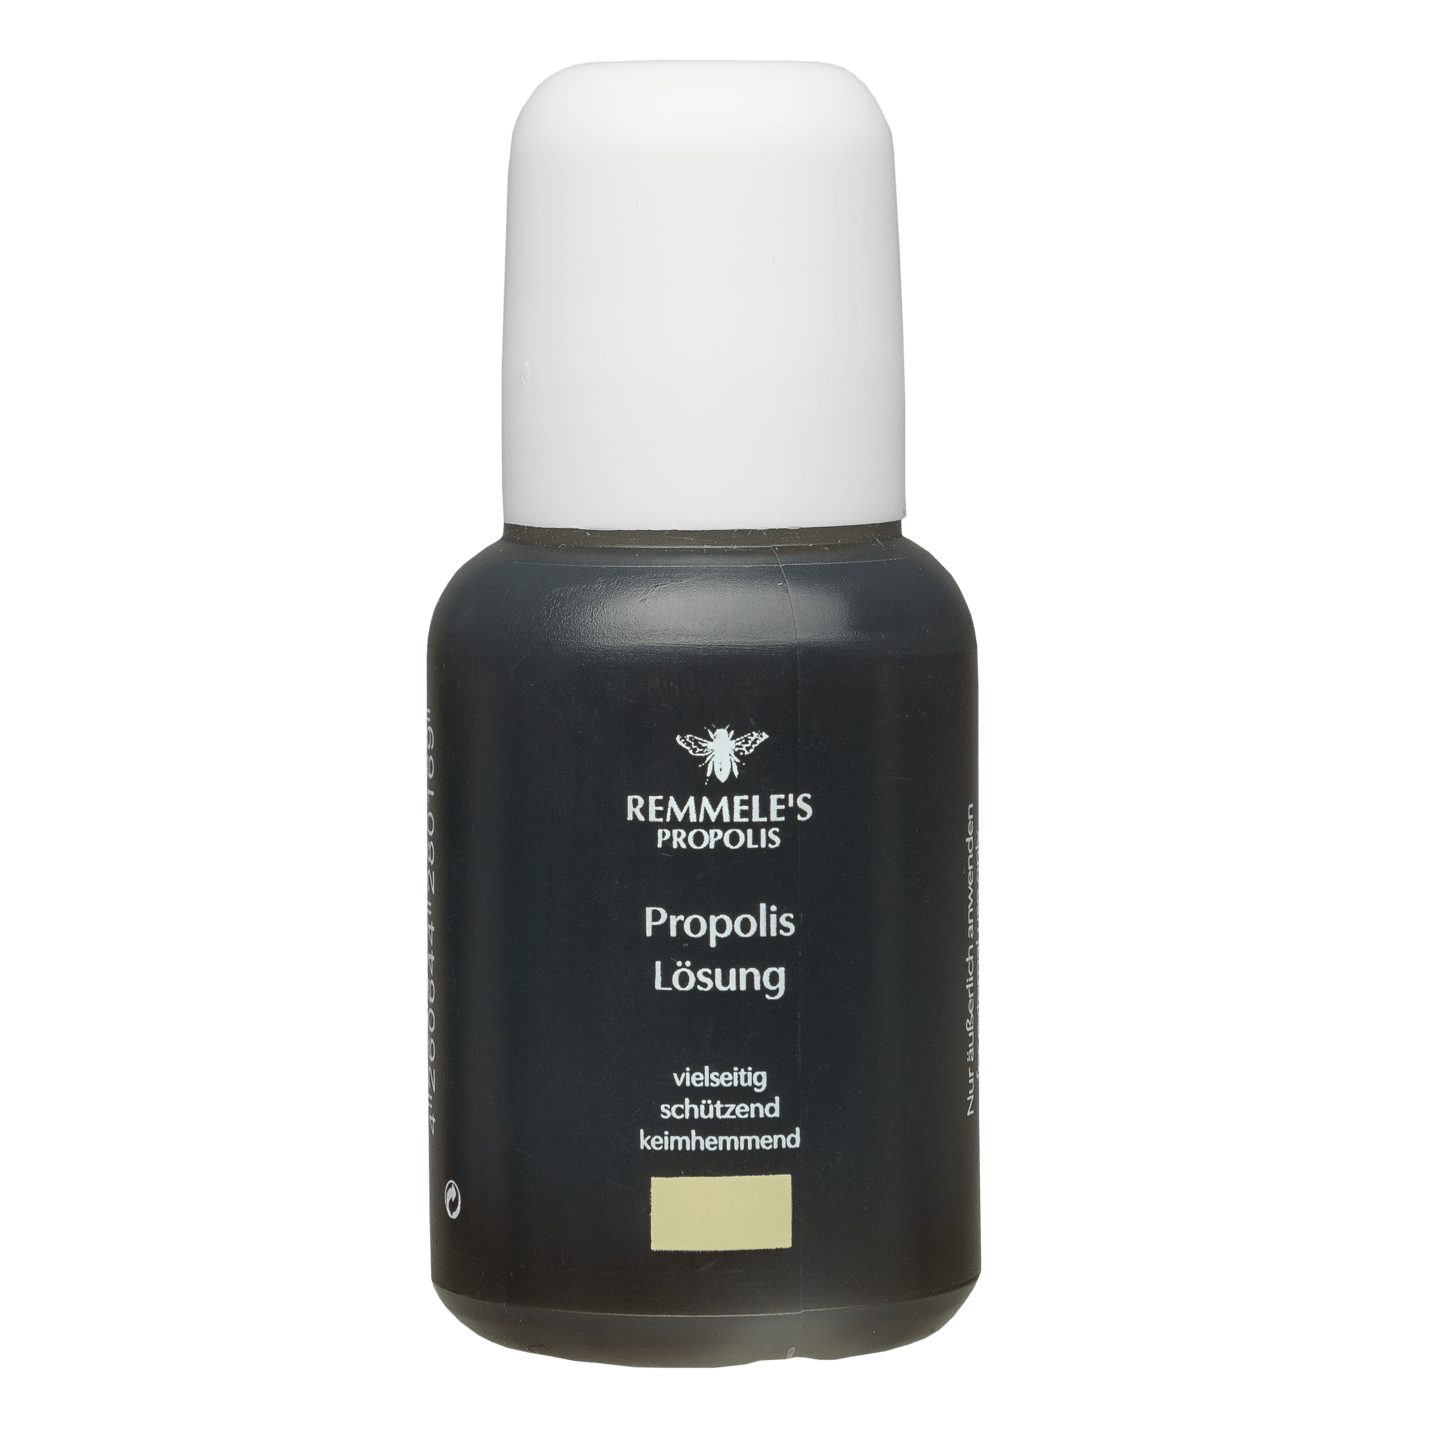 Remmele's Propolis - Propolis Lösung, 30 ml